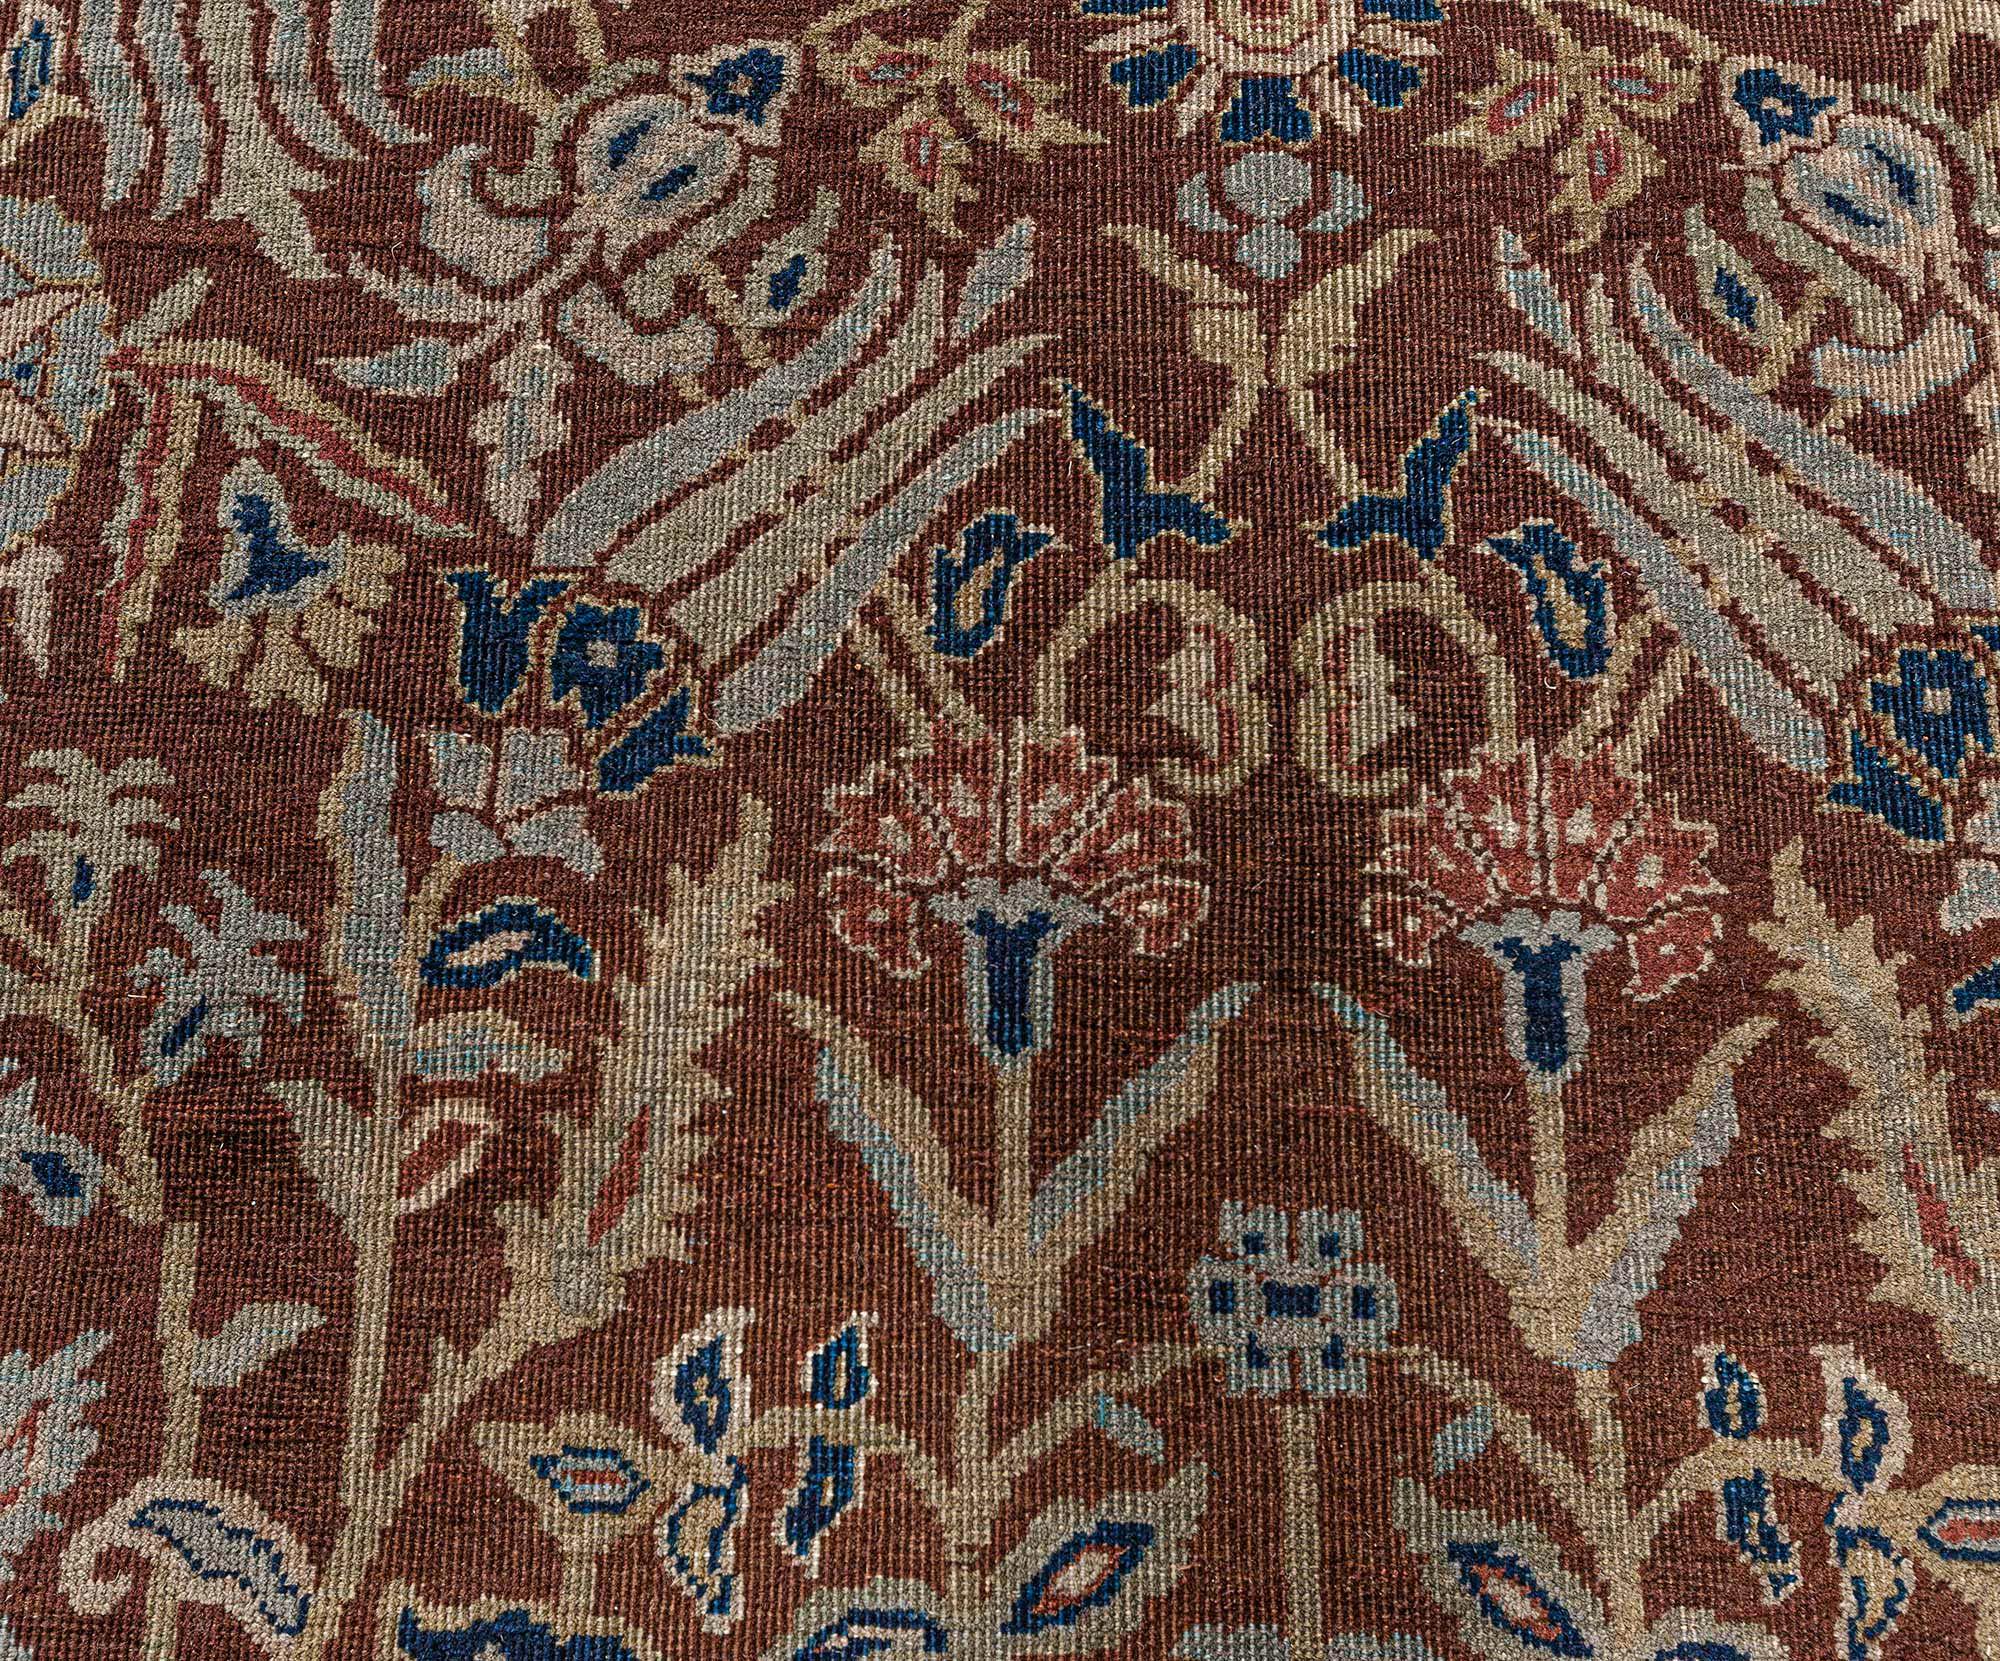 Antiker indischer brauner handgefertigter Wollteppich von Doris Leslie Blau
Größe: 11'8